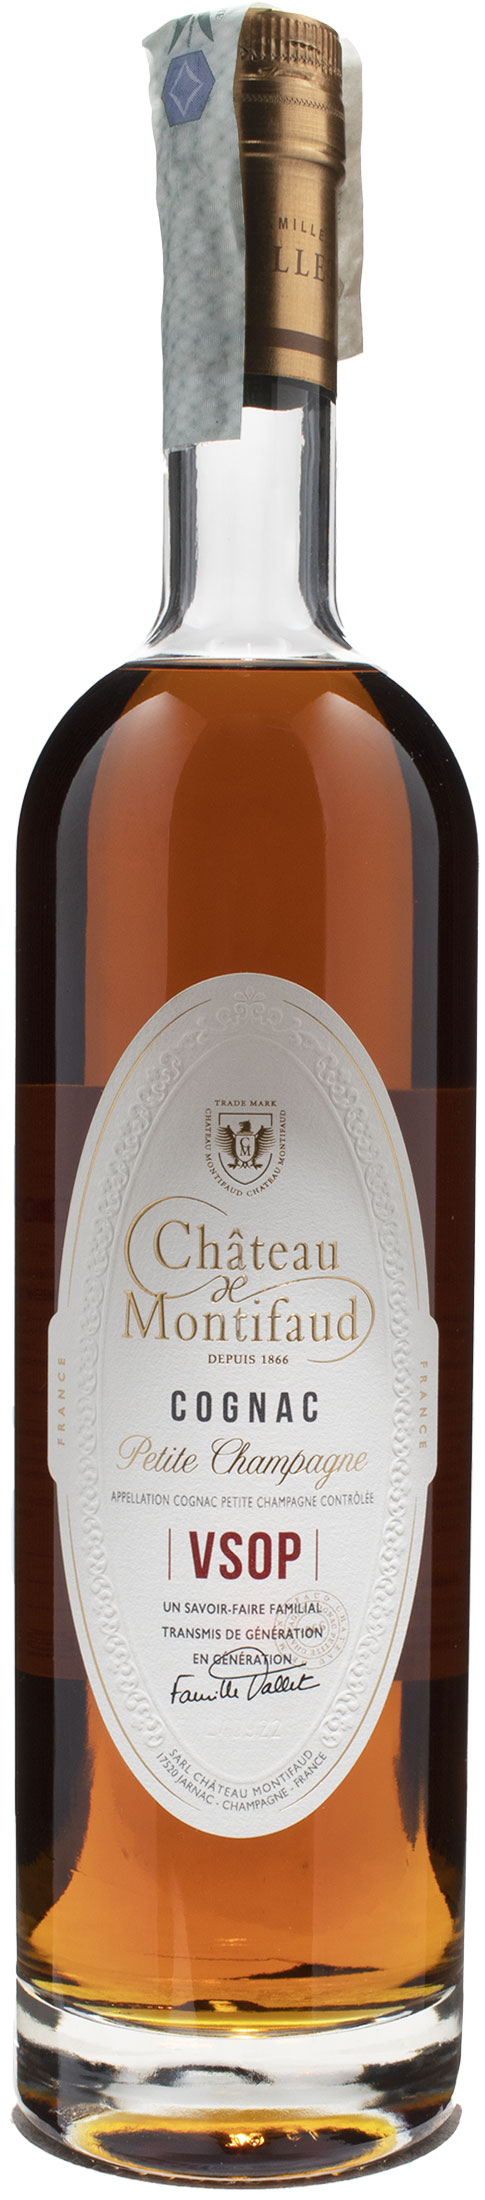 Chateau de Montifaud Cognac Petite Champagne VSOP